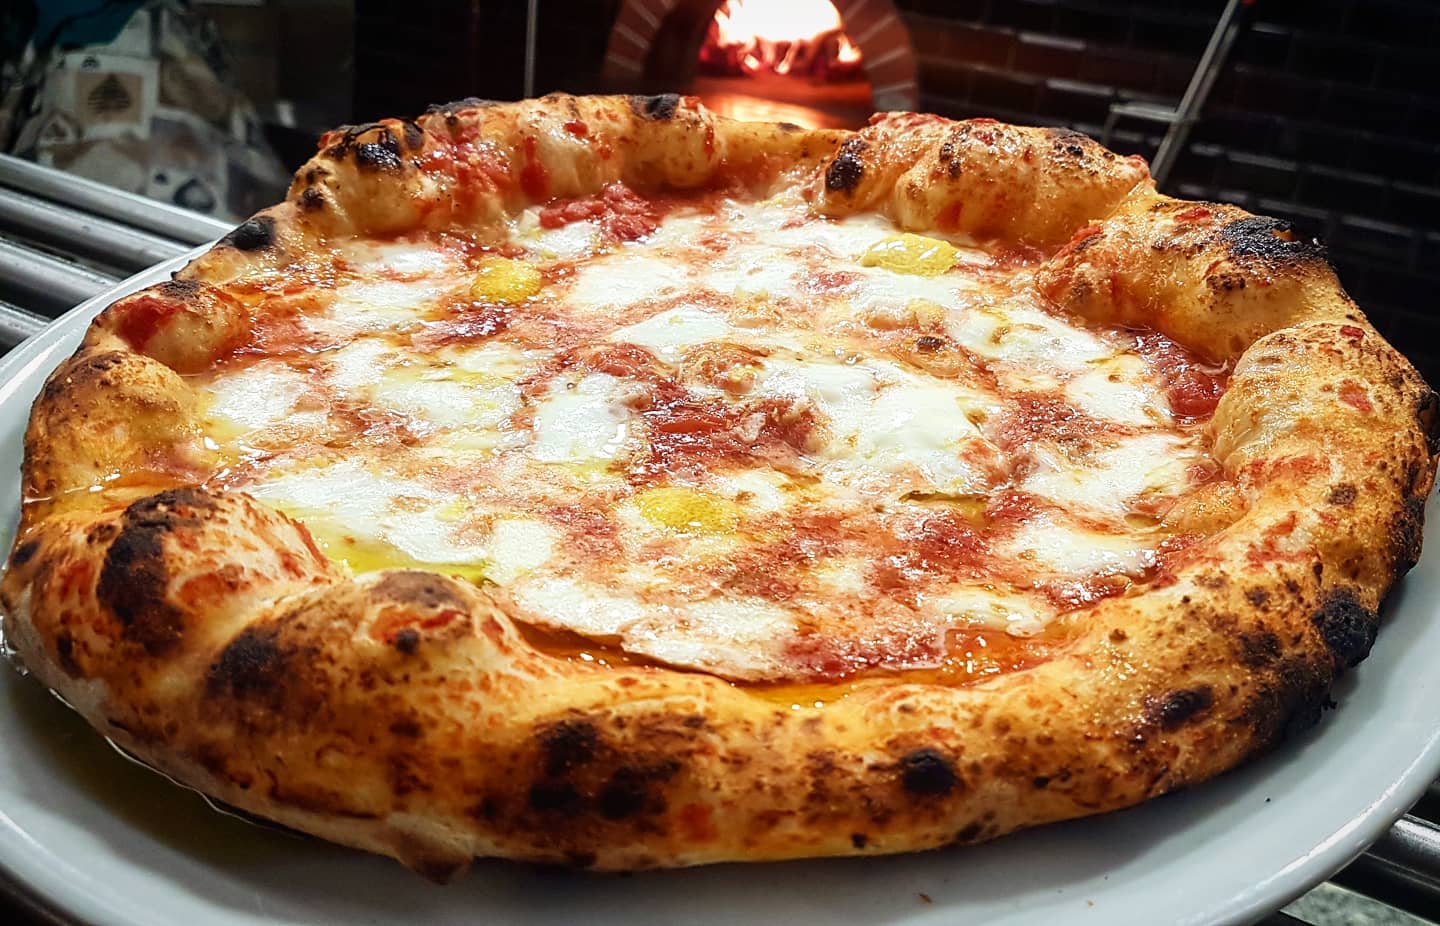 La Gatta Mangiona serve some of the best pizza in Rome.